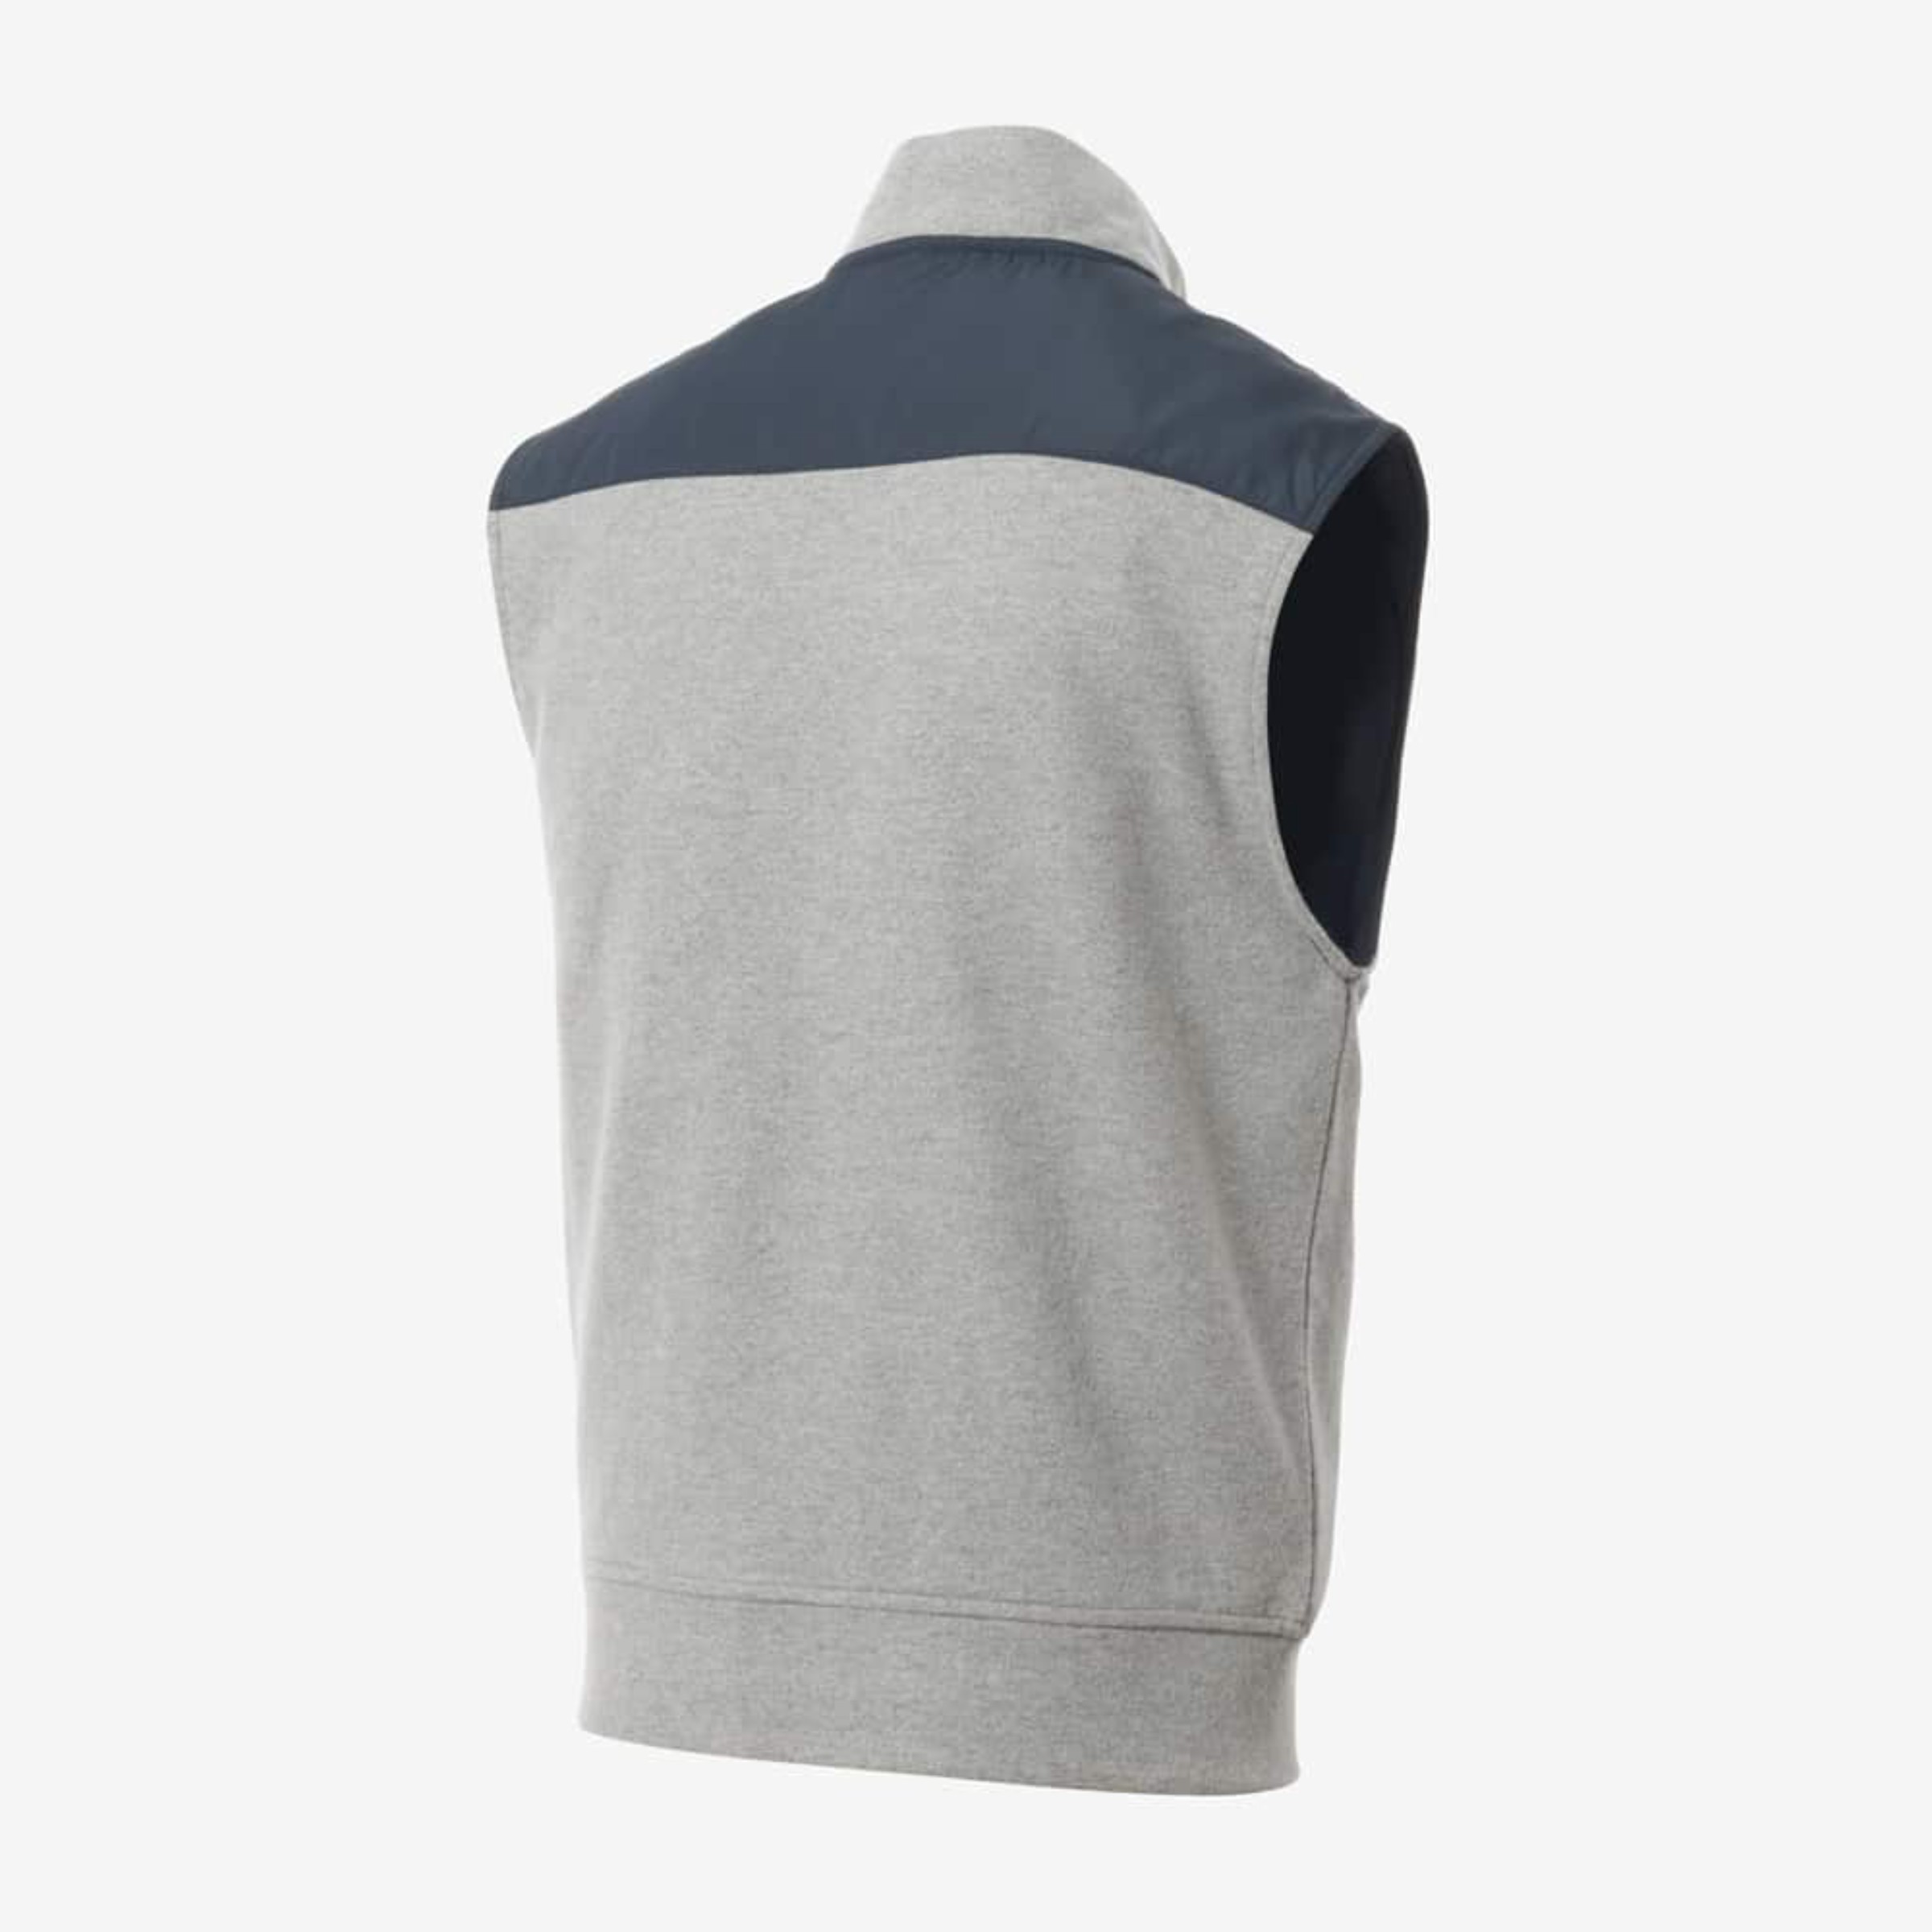 James Zip-front Vest | Men's Outerwear | Allen Edmonds